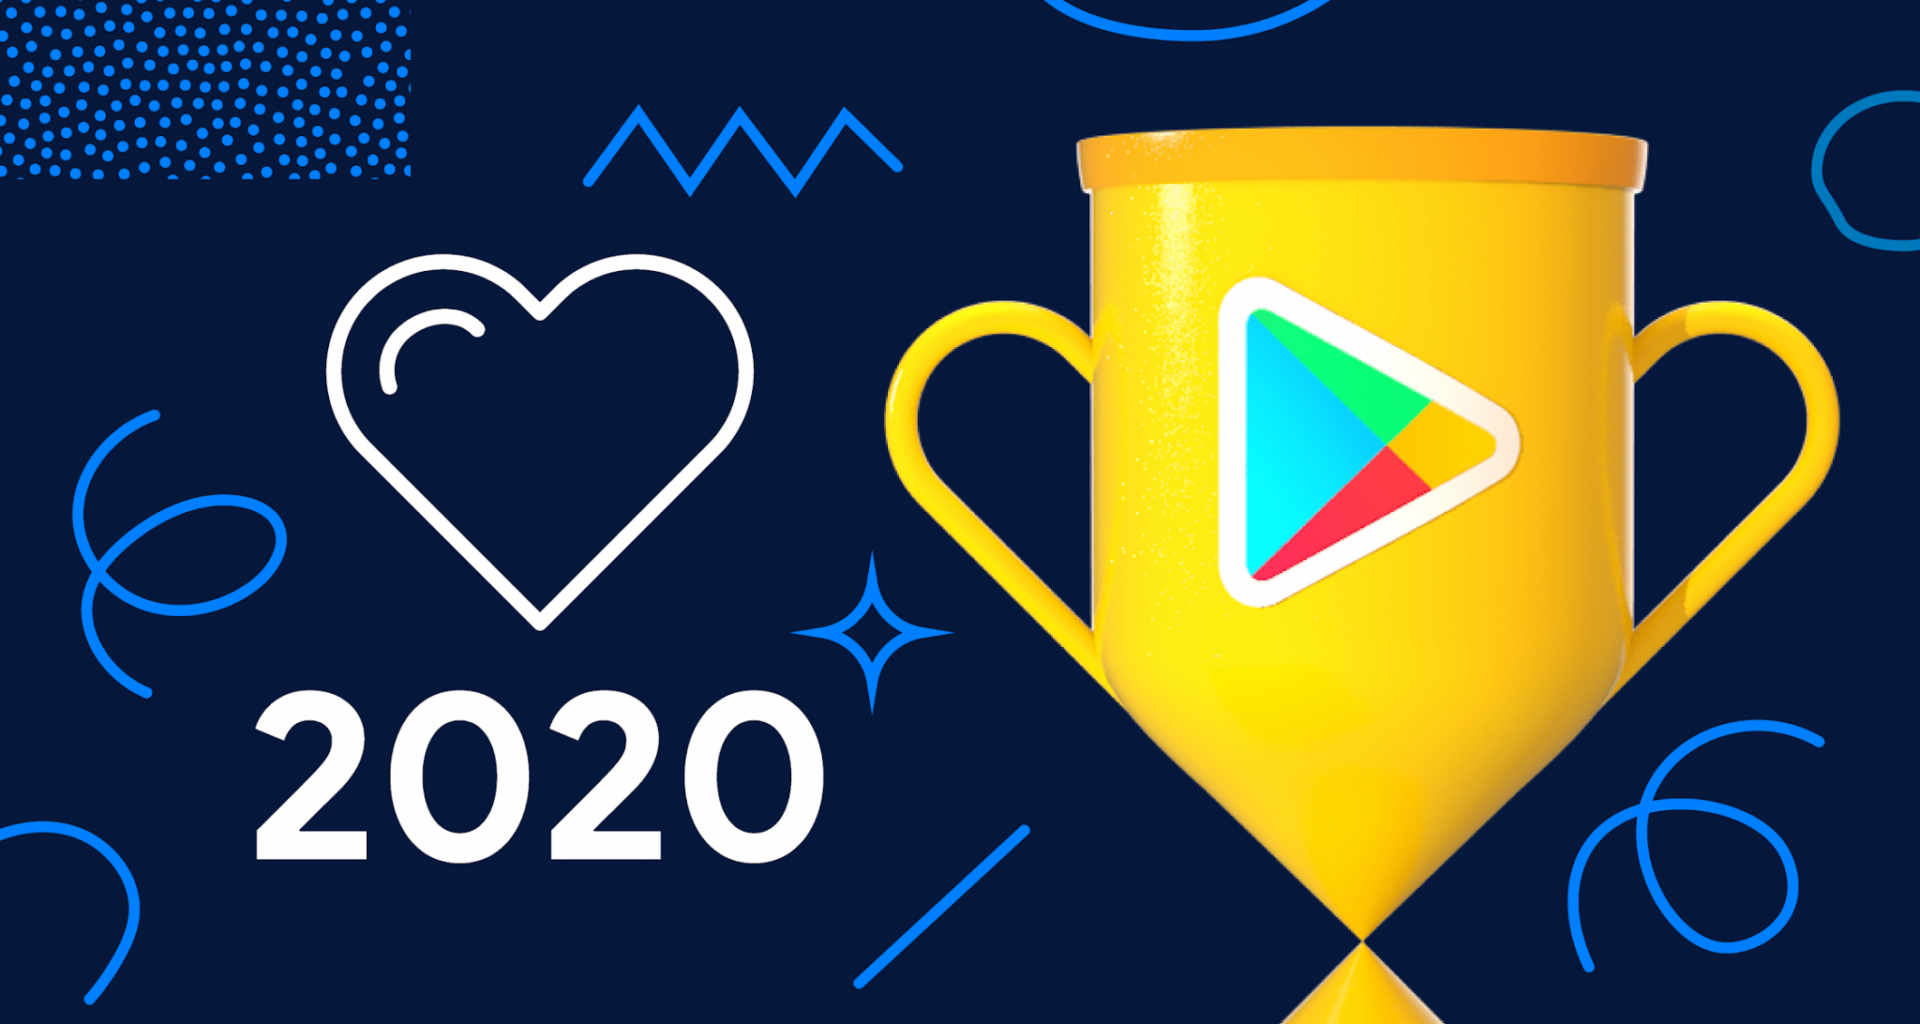 Google play awards reúne os melhores apps android de 2020